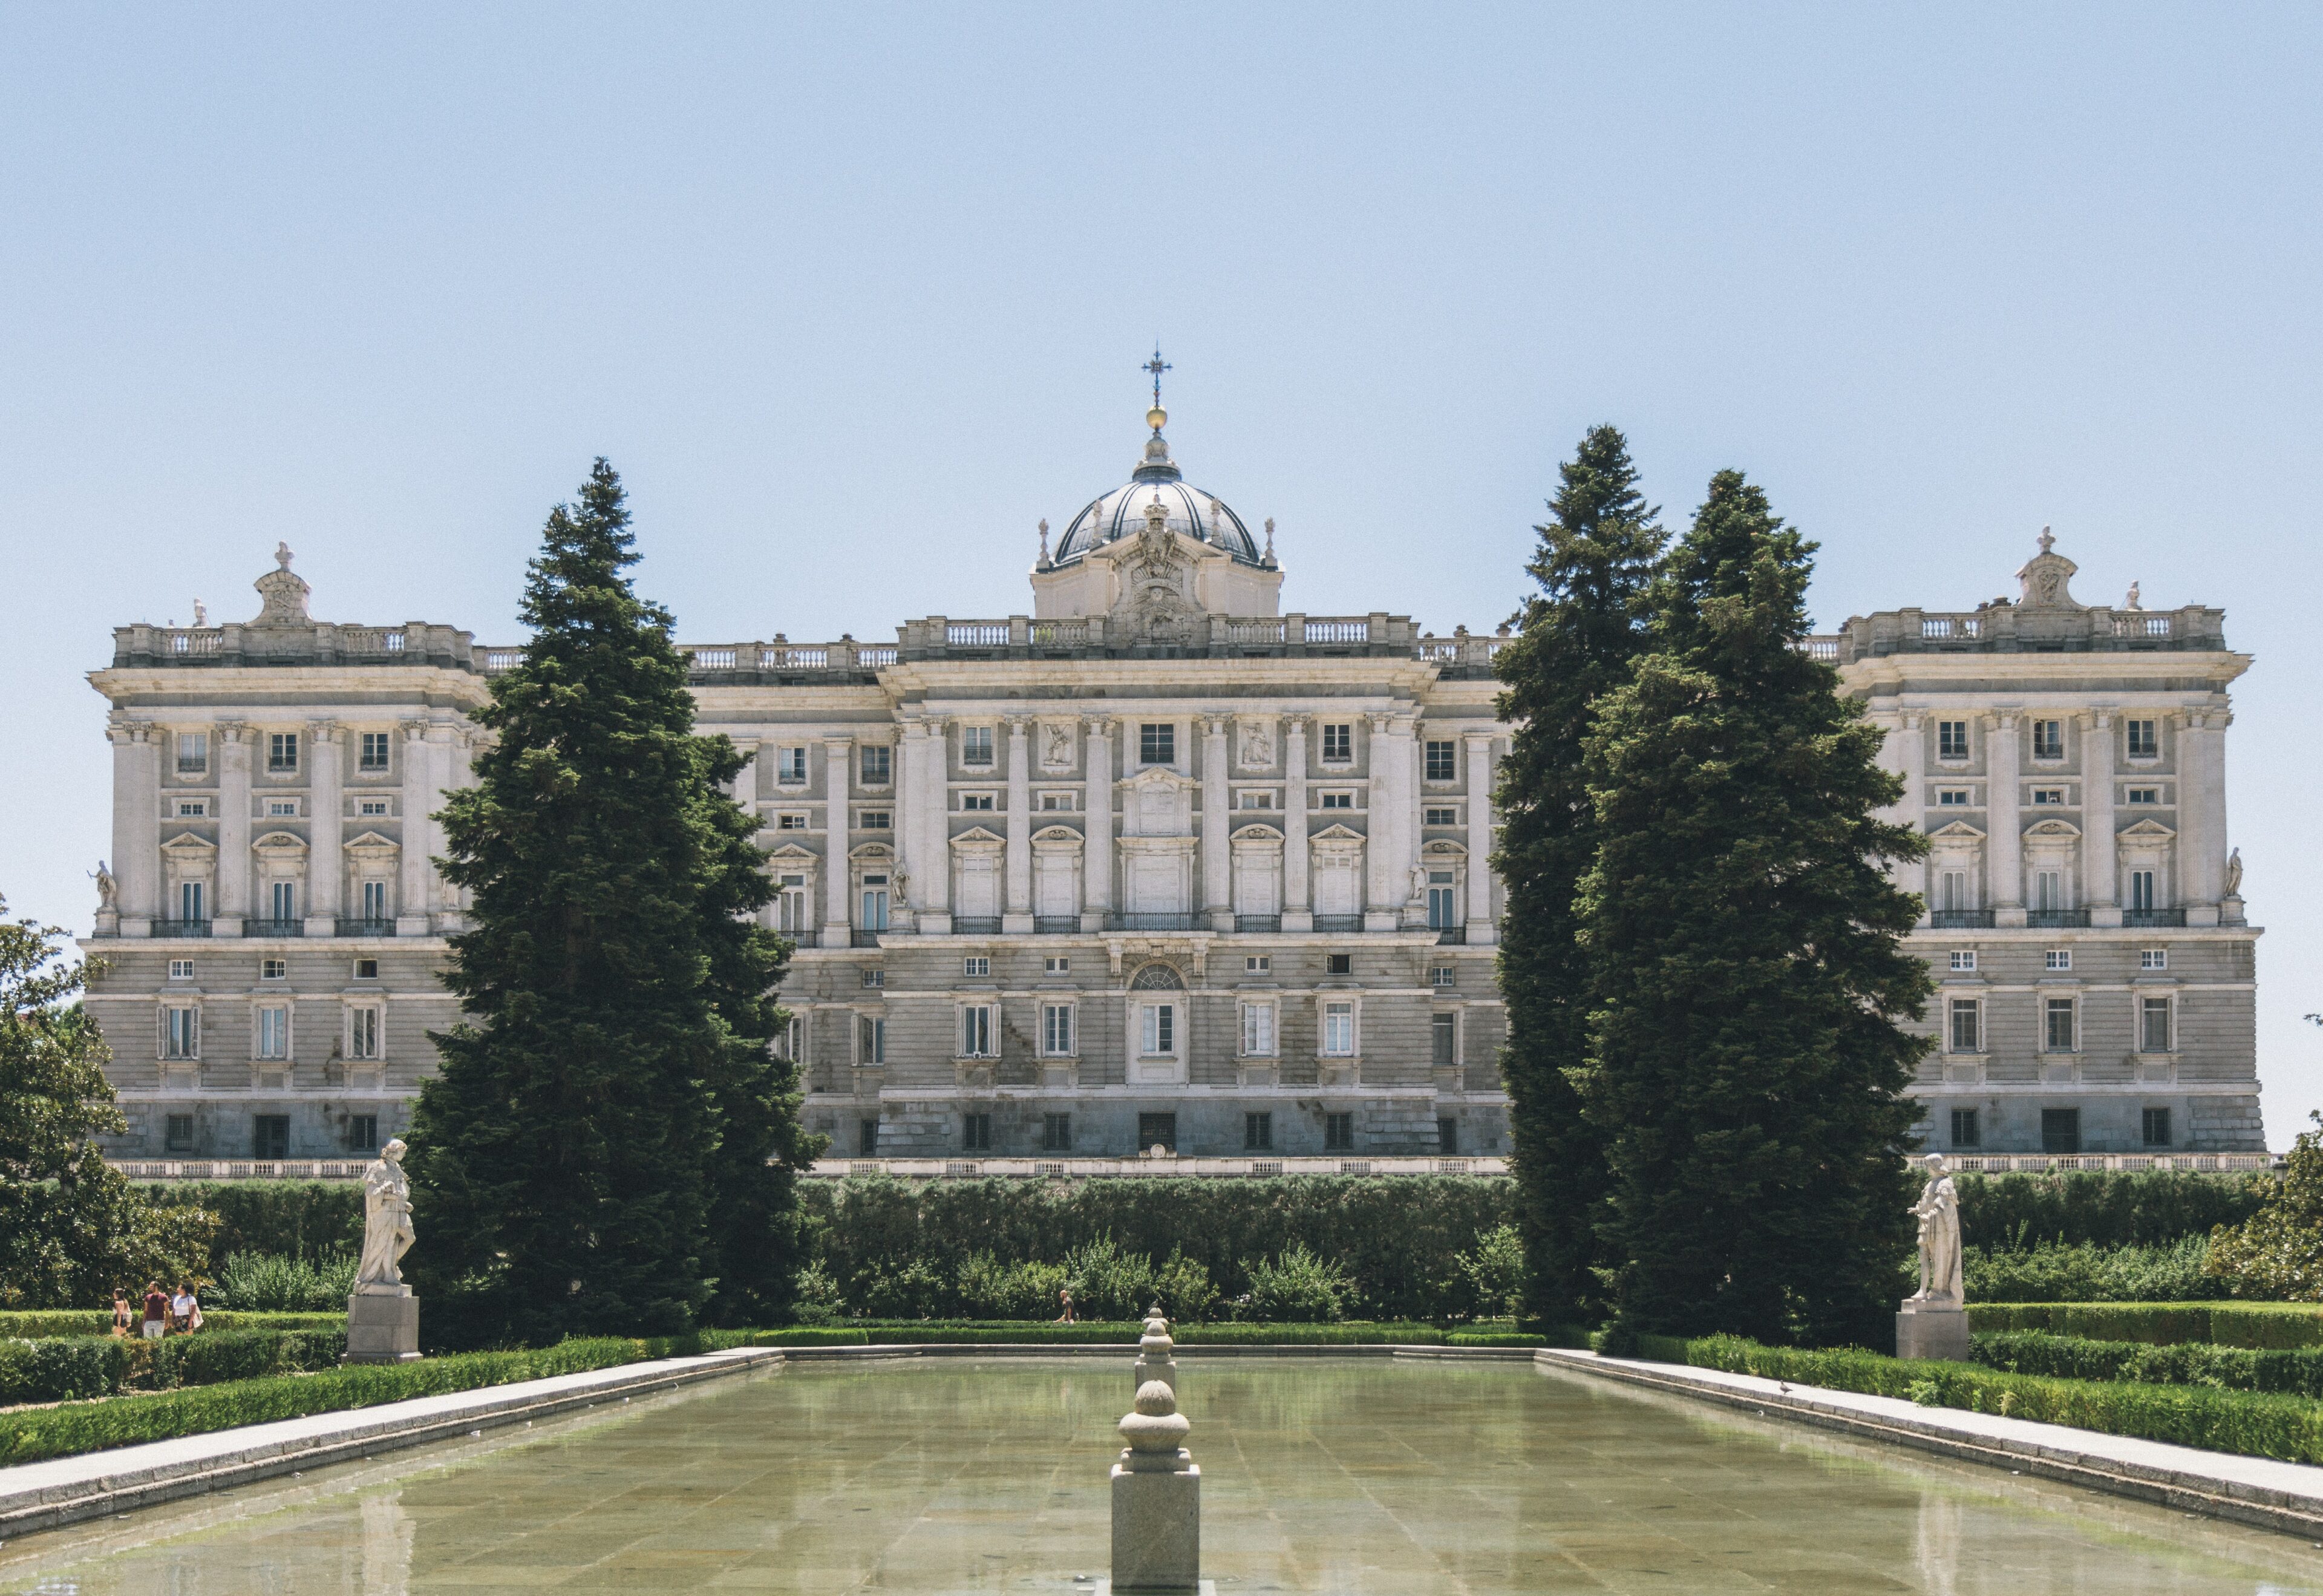 Visita guiada al palacio real Madrid: Esplendor del Salón de los Espejos